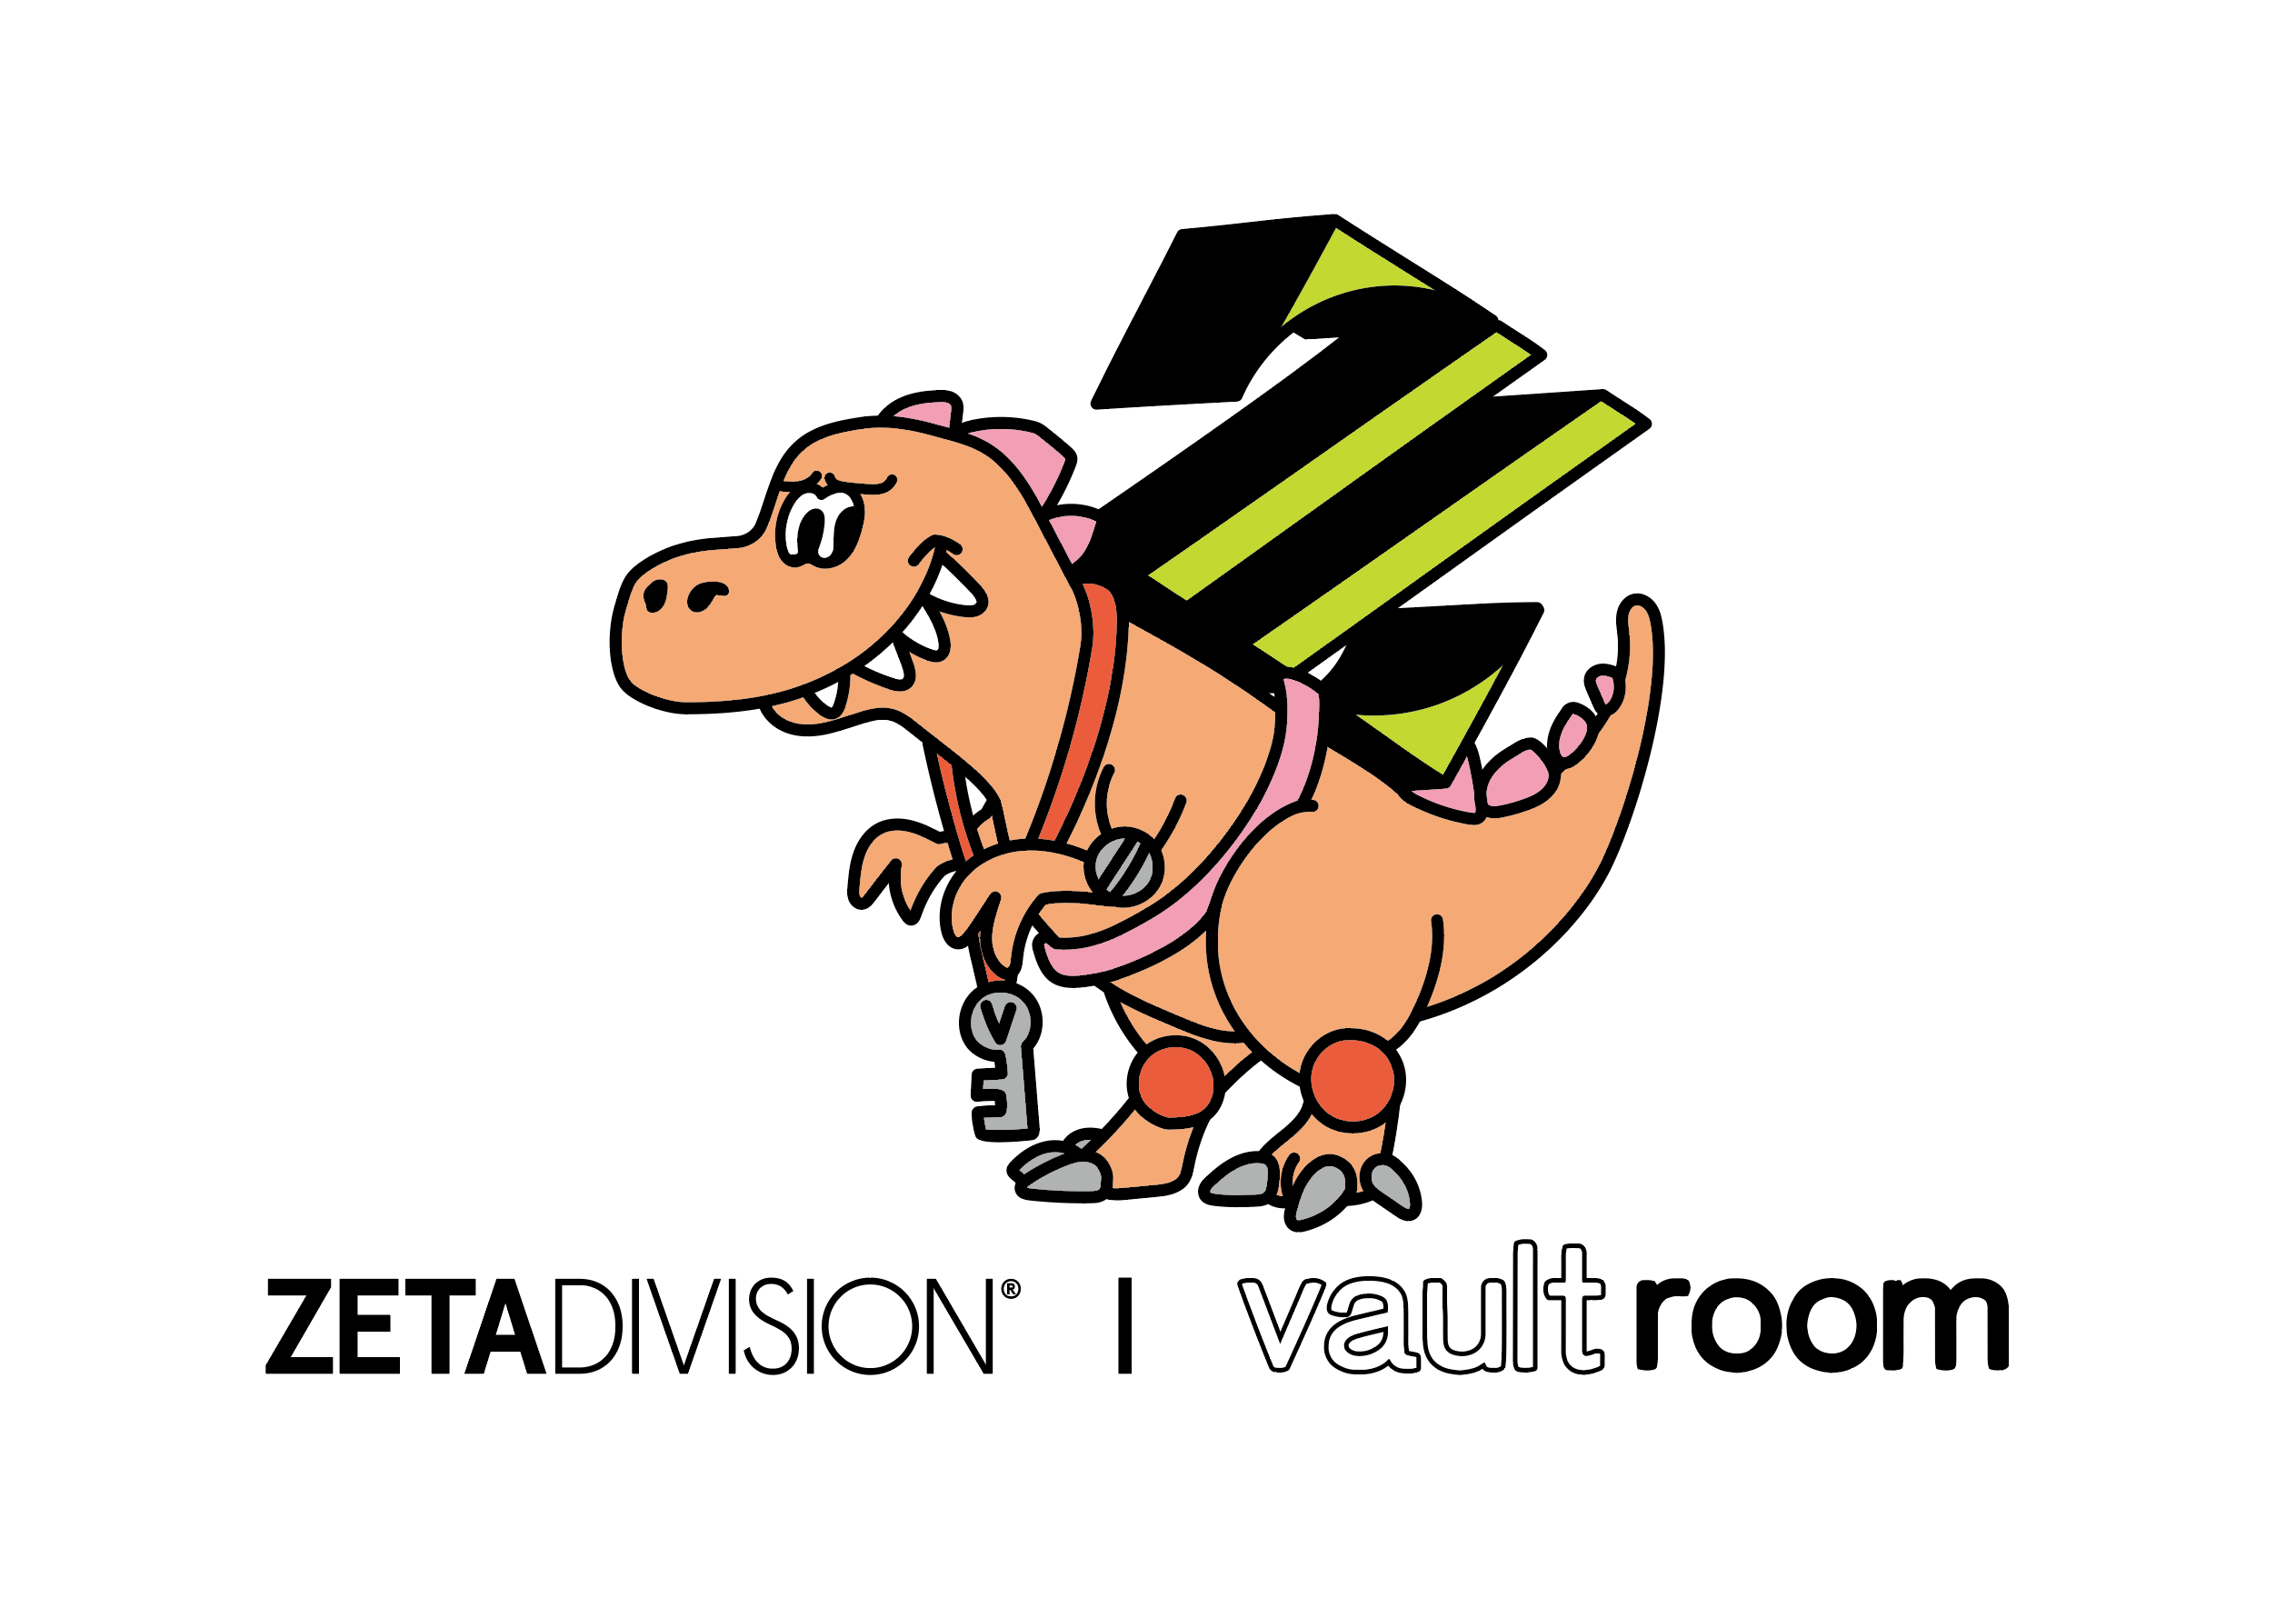 ZETA DIVISION × vault room – VAULTROOM